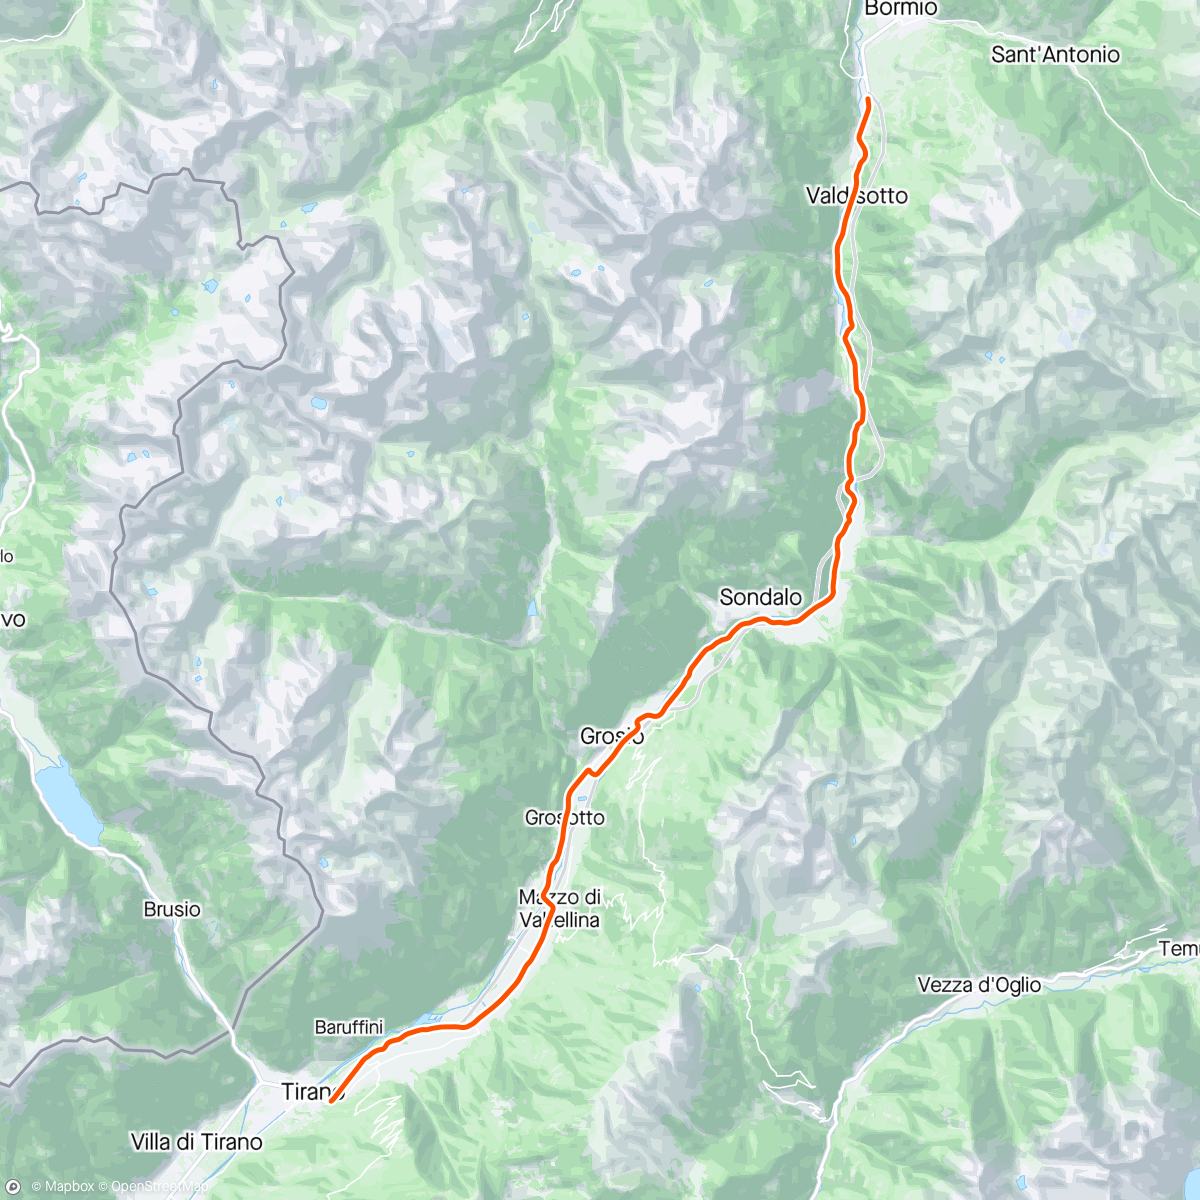 Mapa da atividade, ROUVY - Bormio to Tirano | Italy | nix draussen